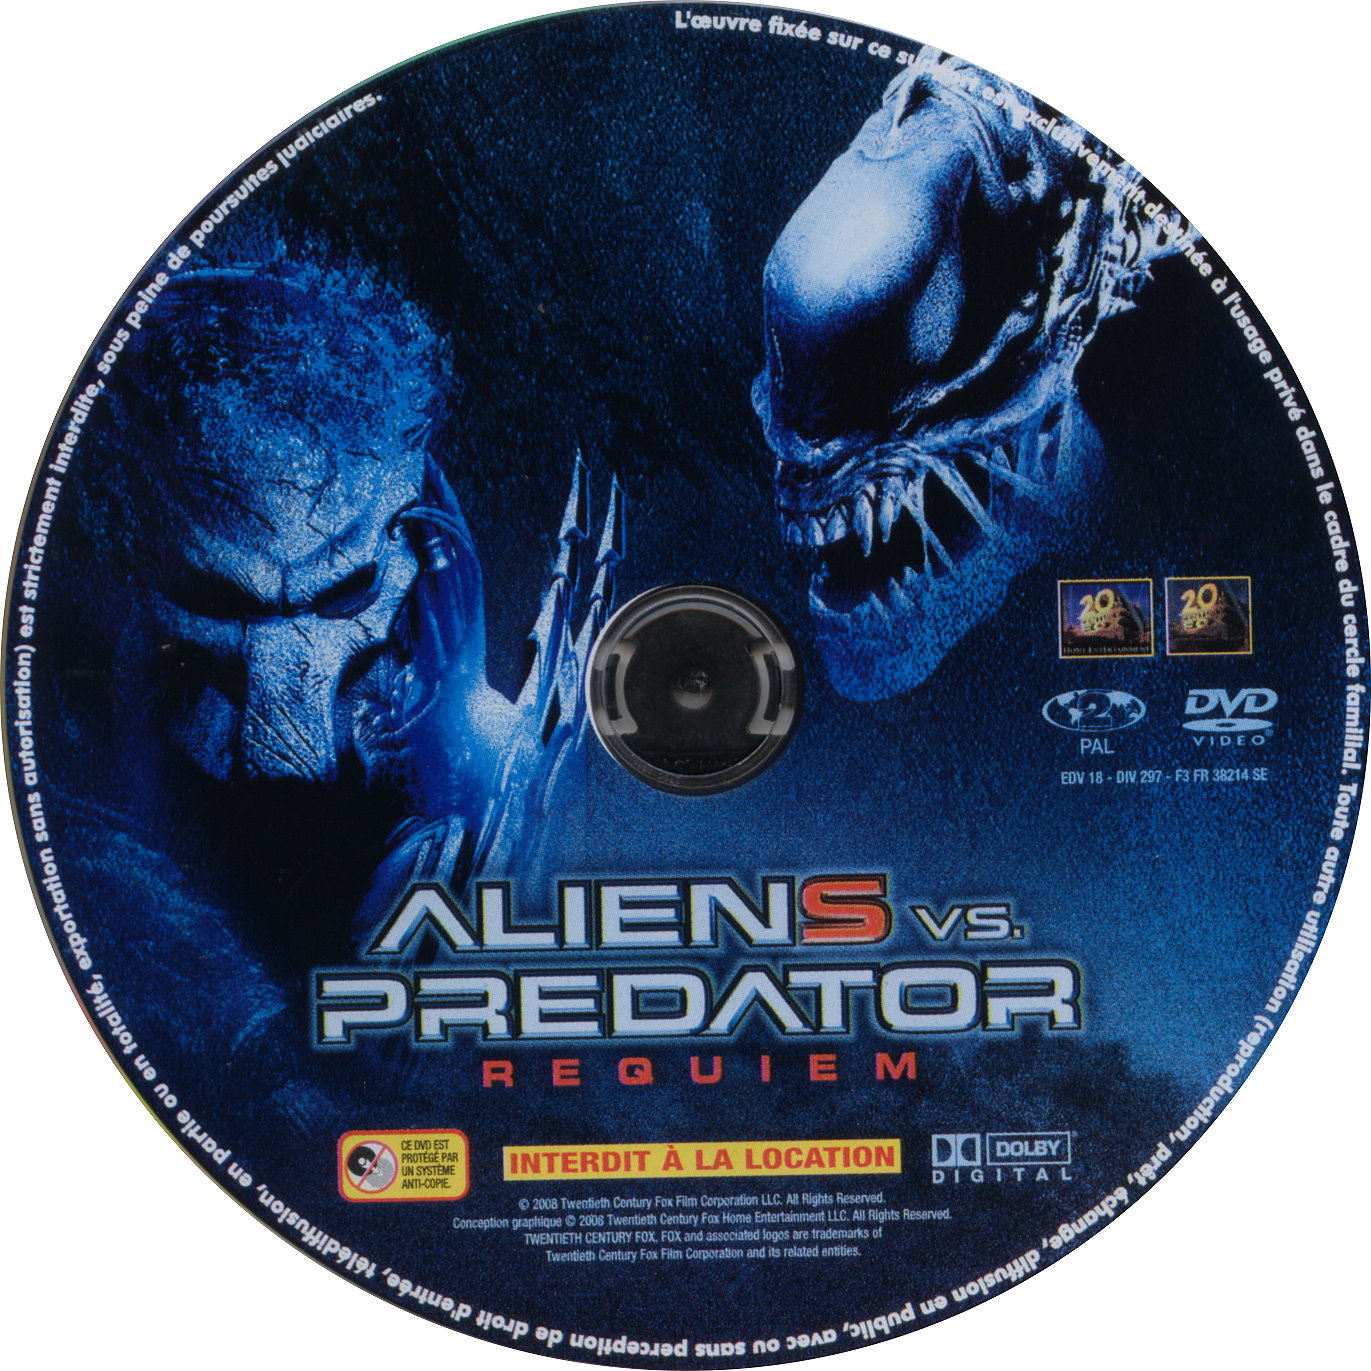 download alien vs predator 2 requiem